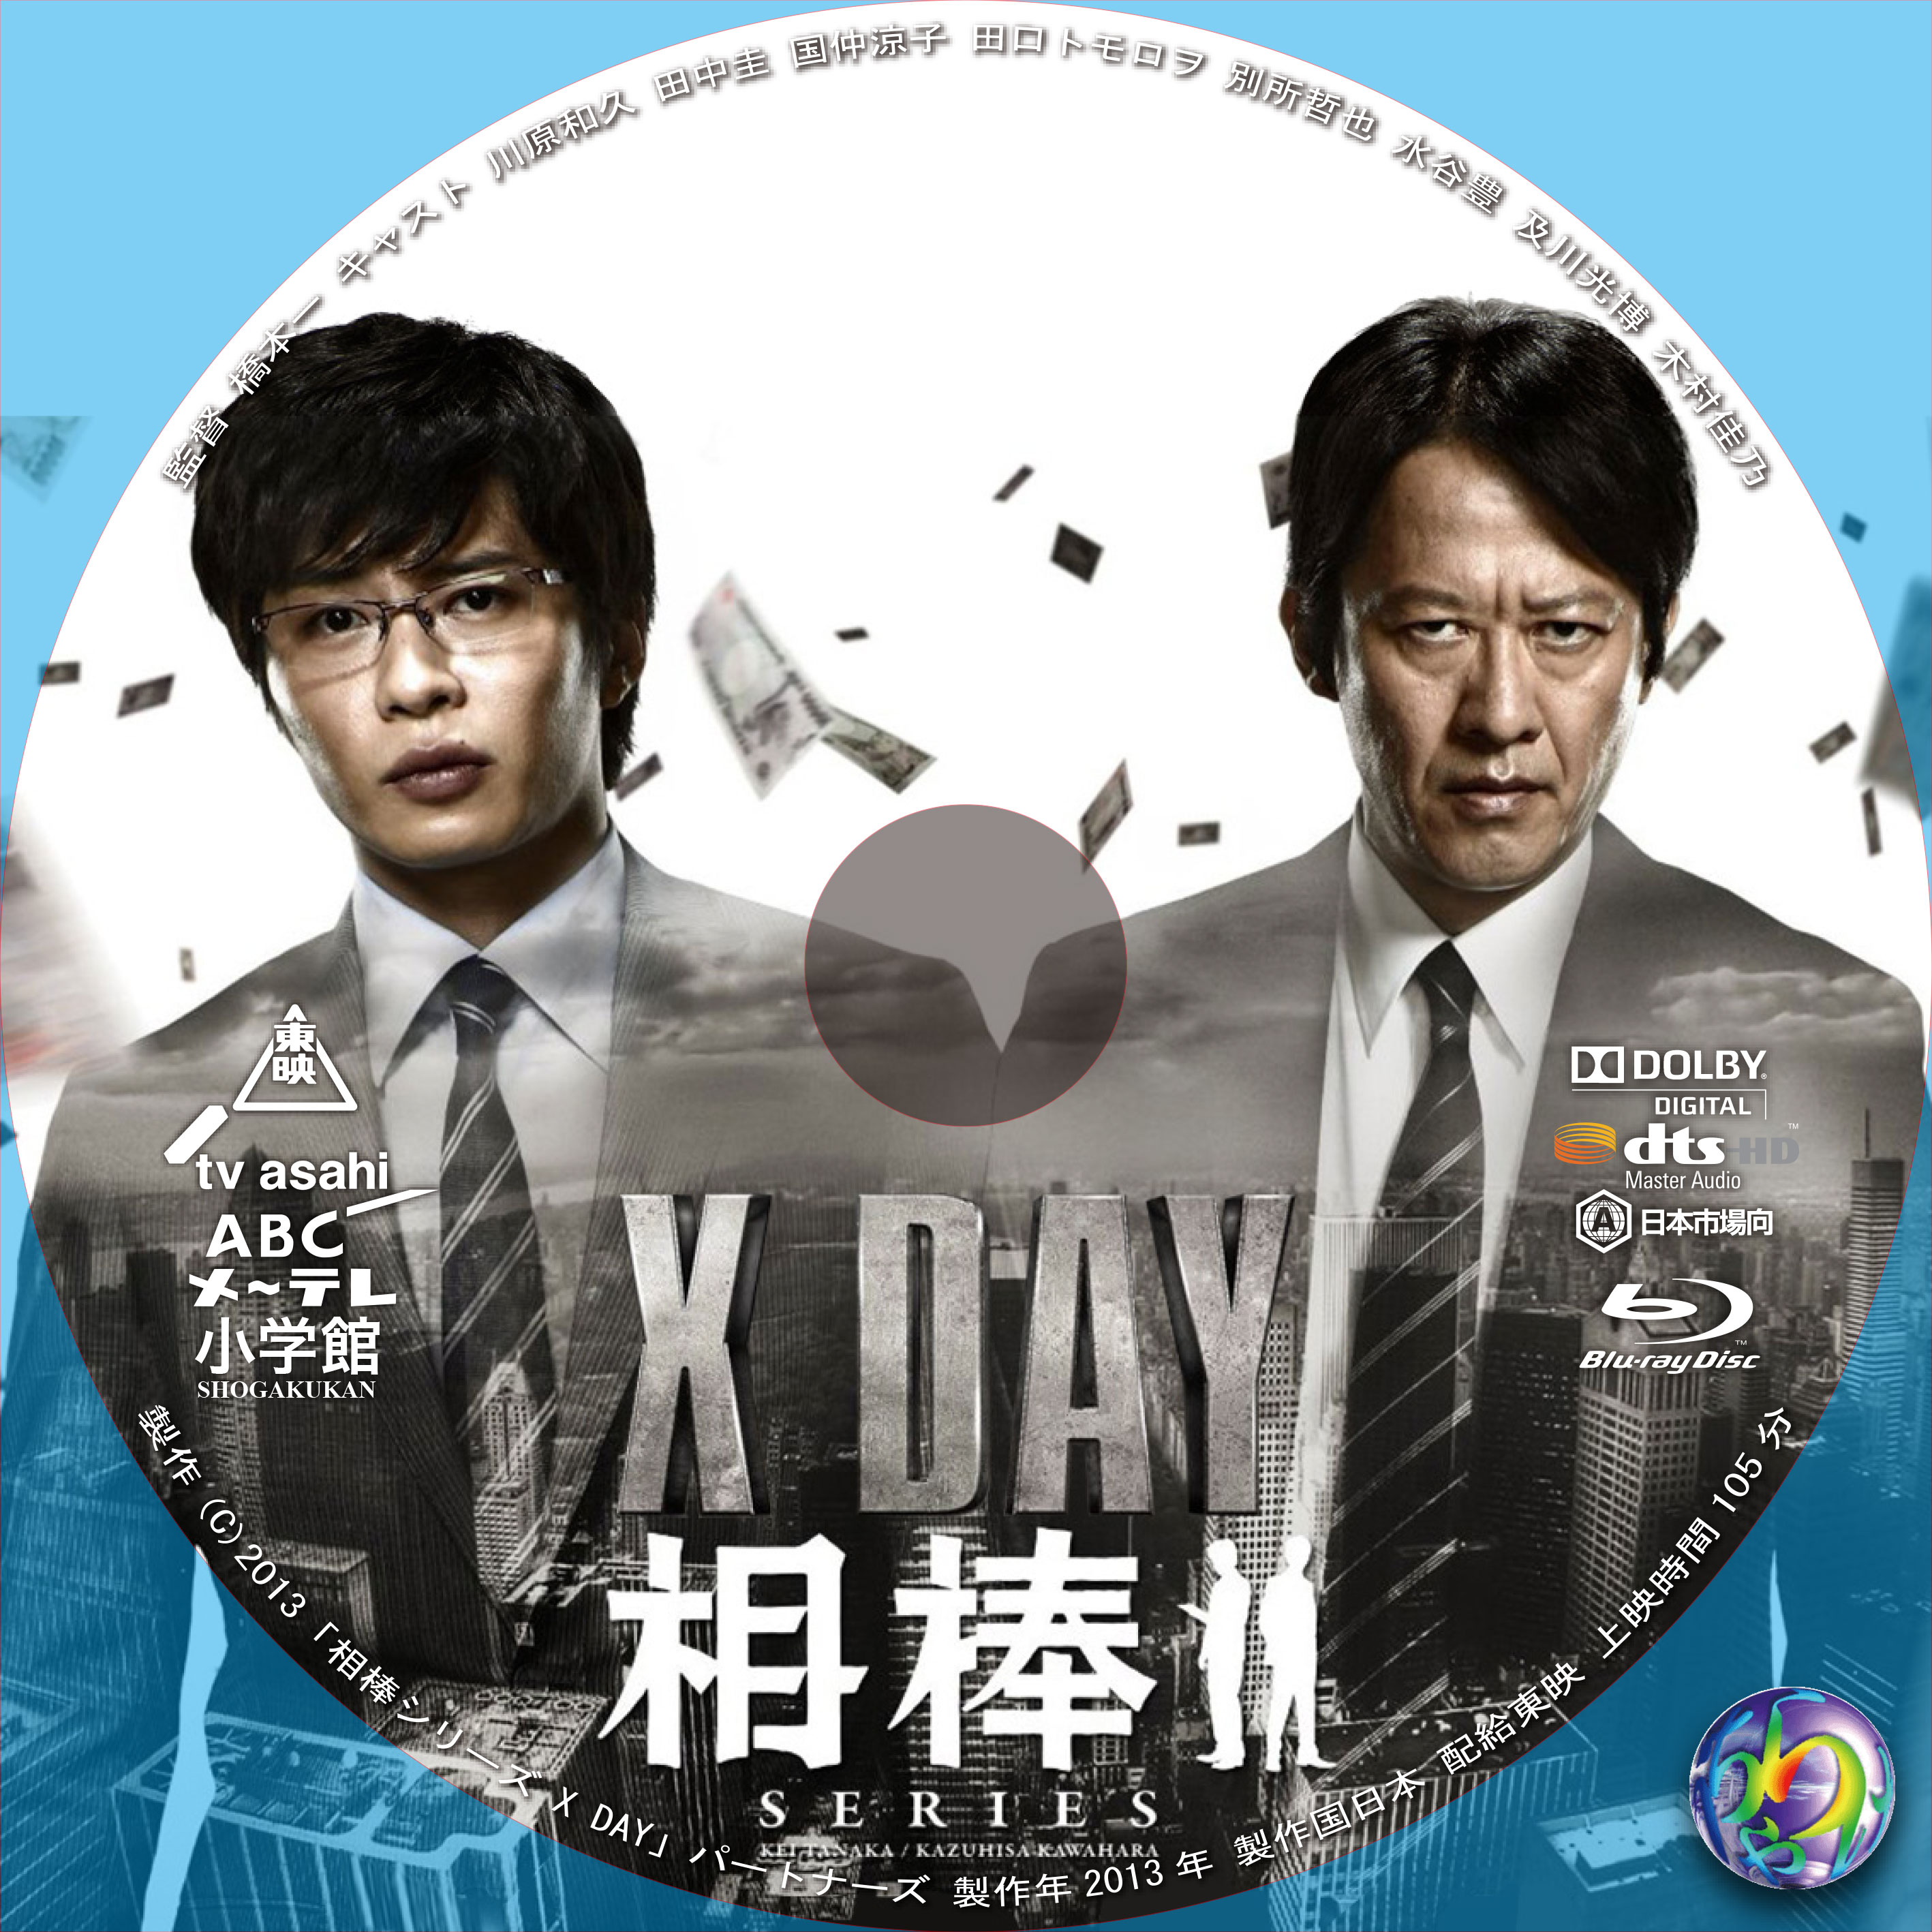 相棒シリーズ X DAY 田中圭 Blu-ray